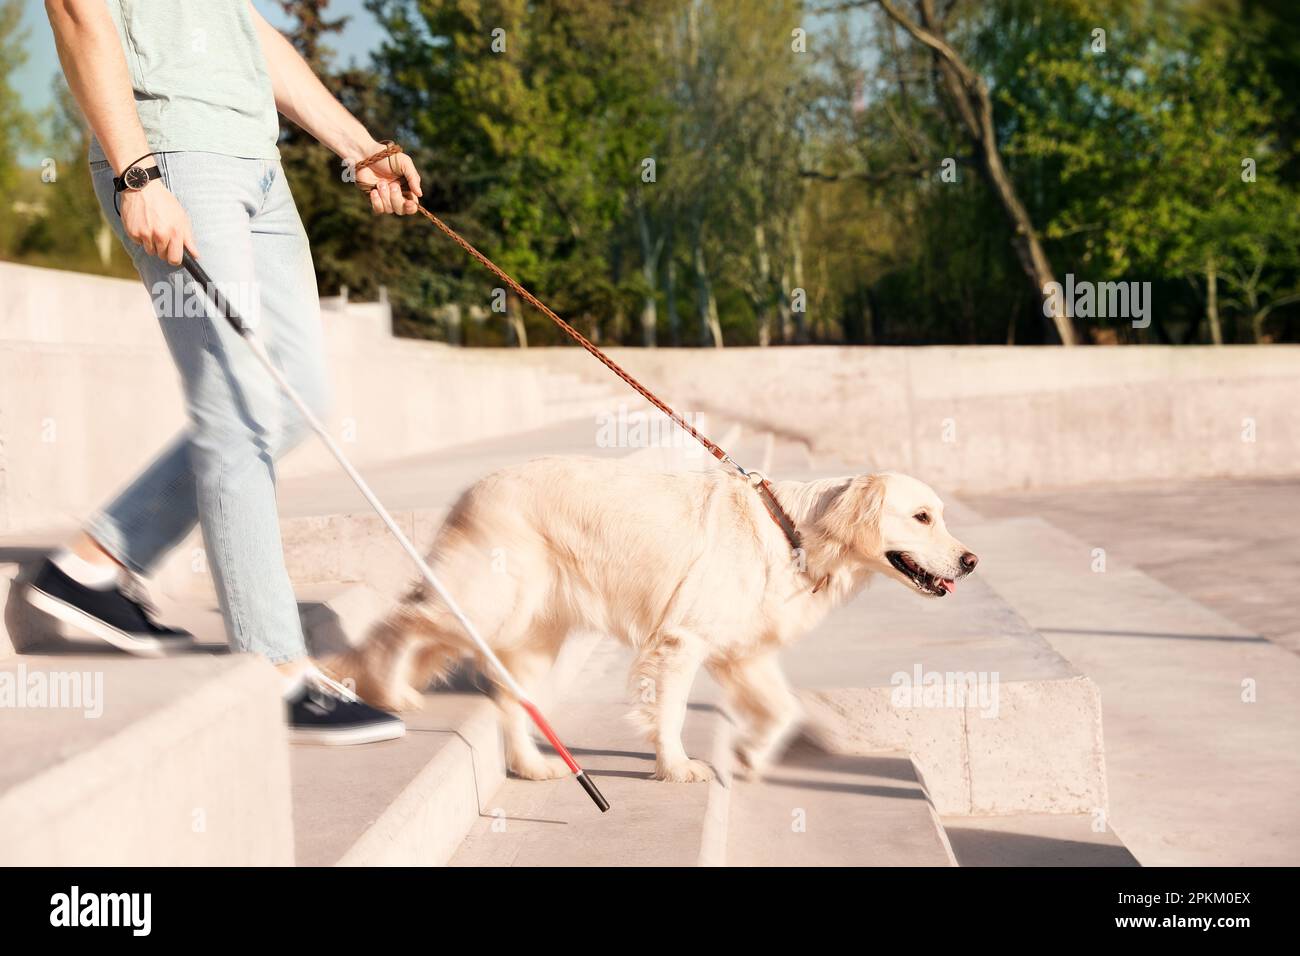 Chien-guide aidant personne aveugle avec de longues cannes descendant des escaliers à l'extérieur Banque D'Images